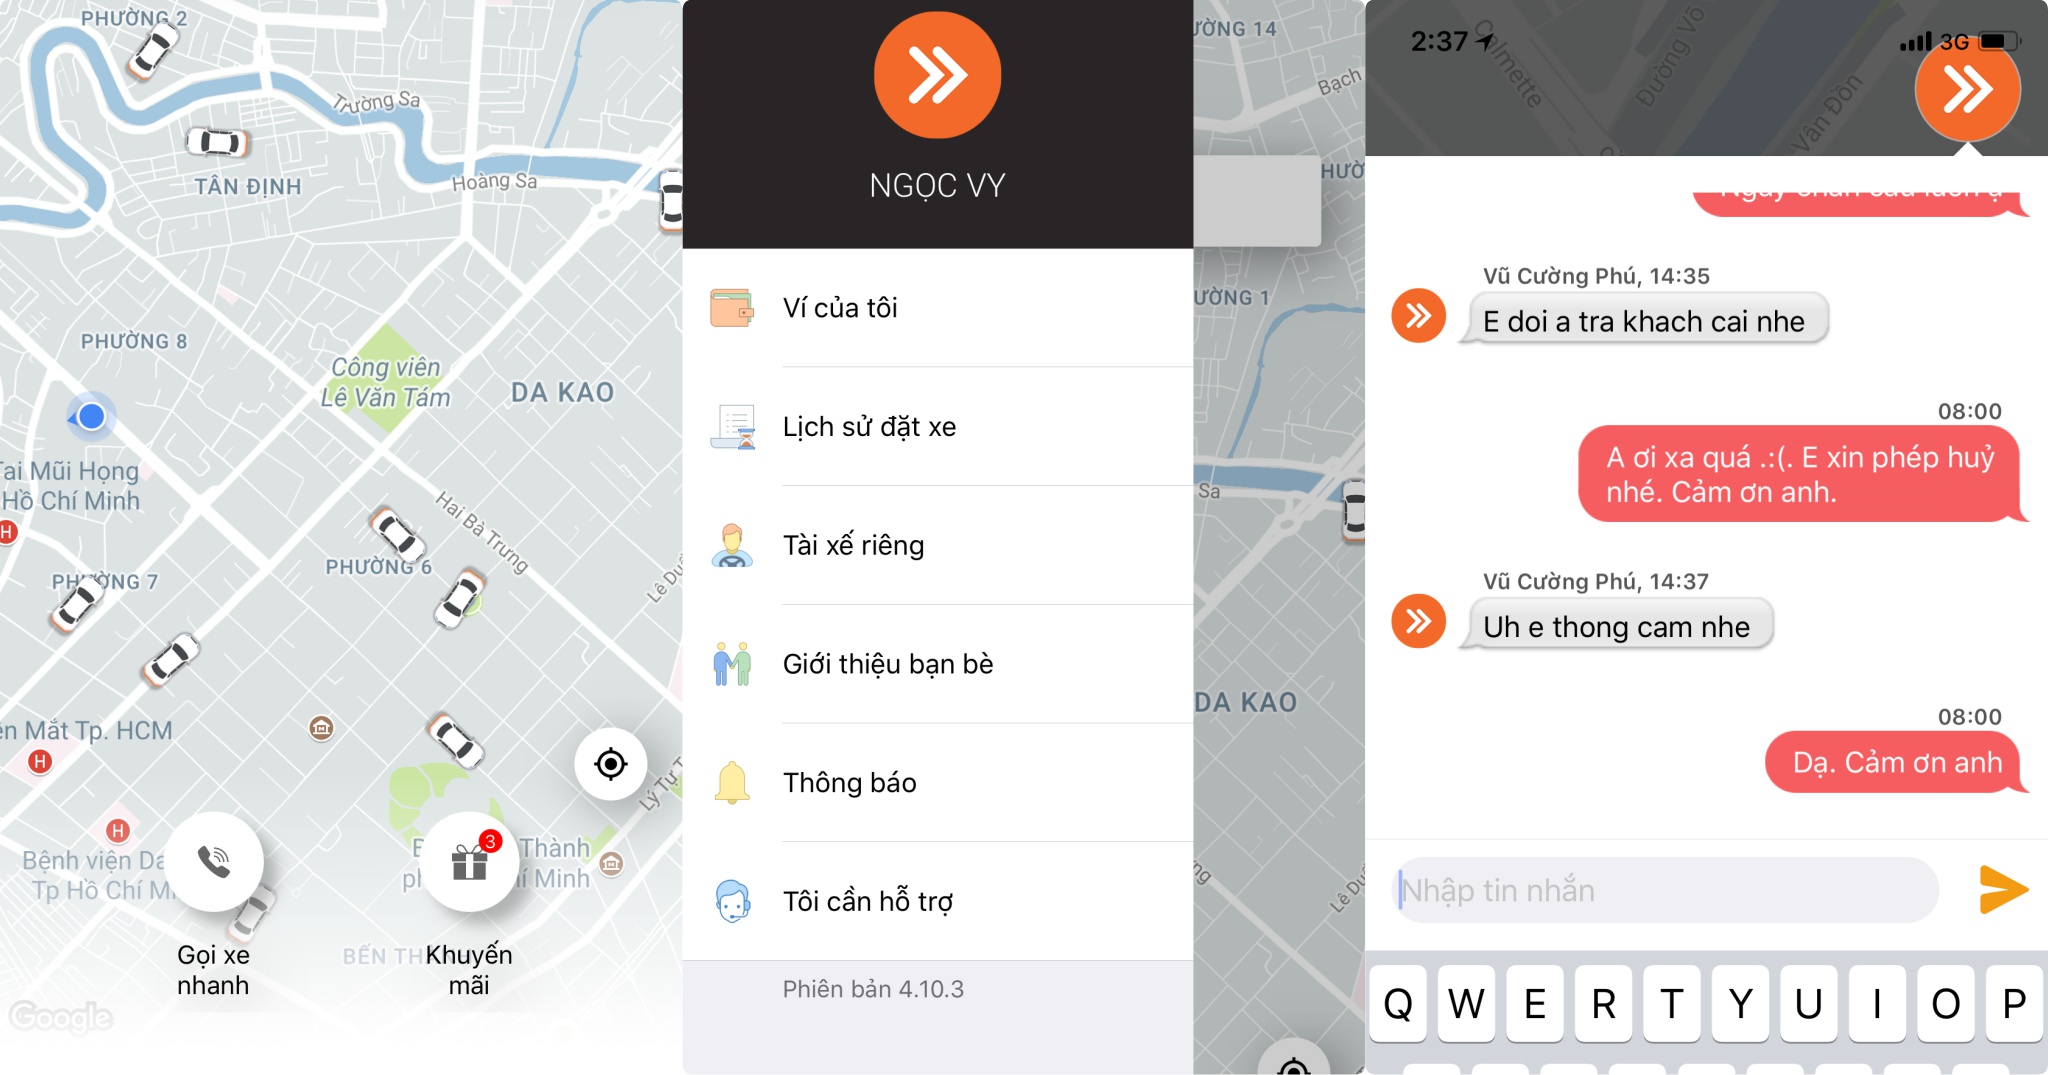 Chia sẻ trải nghiệm đặt xe bằng ứng dụng VATO thay cho Uber, anh em dùng thử chưa?